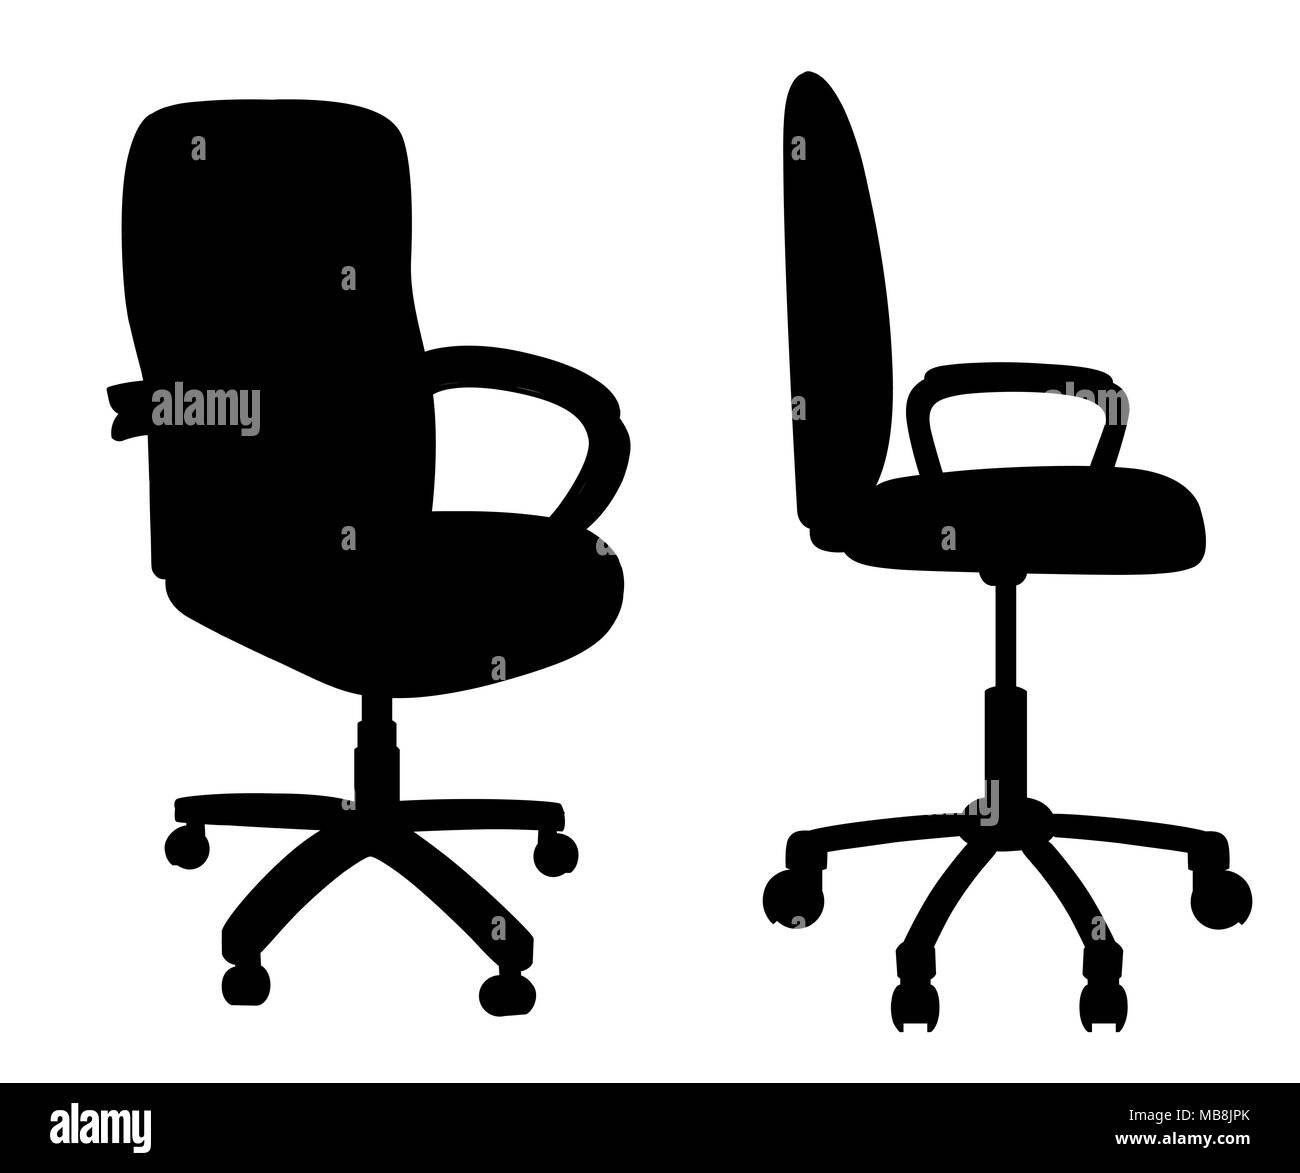 Red sedia ufficio isolato su sfondo bianco. Sede vuota per dipendente. Poltrona ergonomica per il direttore esecutivo. Icona di mobili. Illustrazione Vettoriale Illustrazione Vettoriale